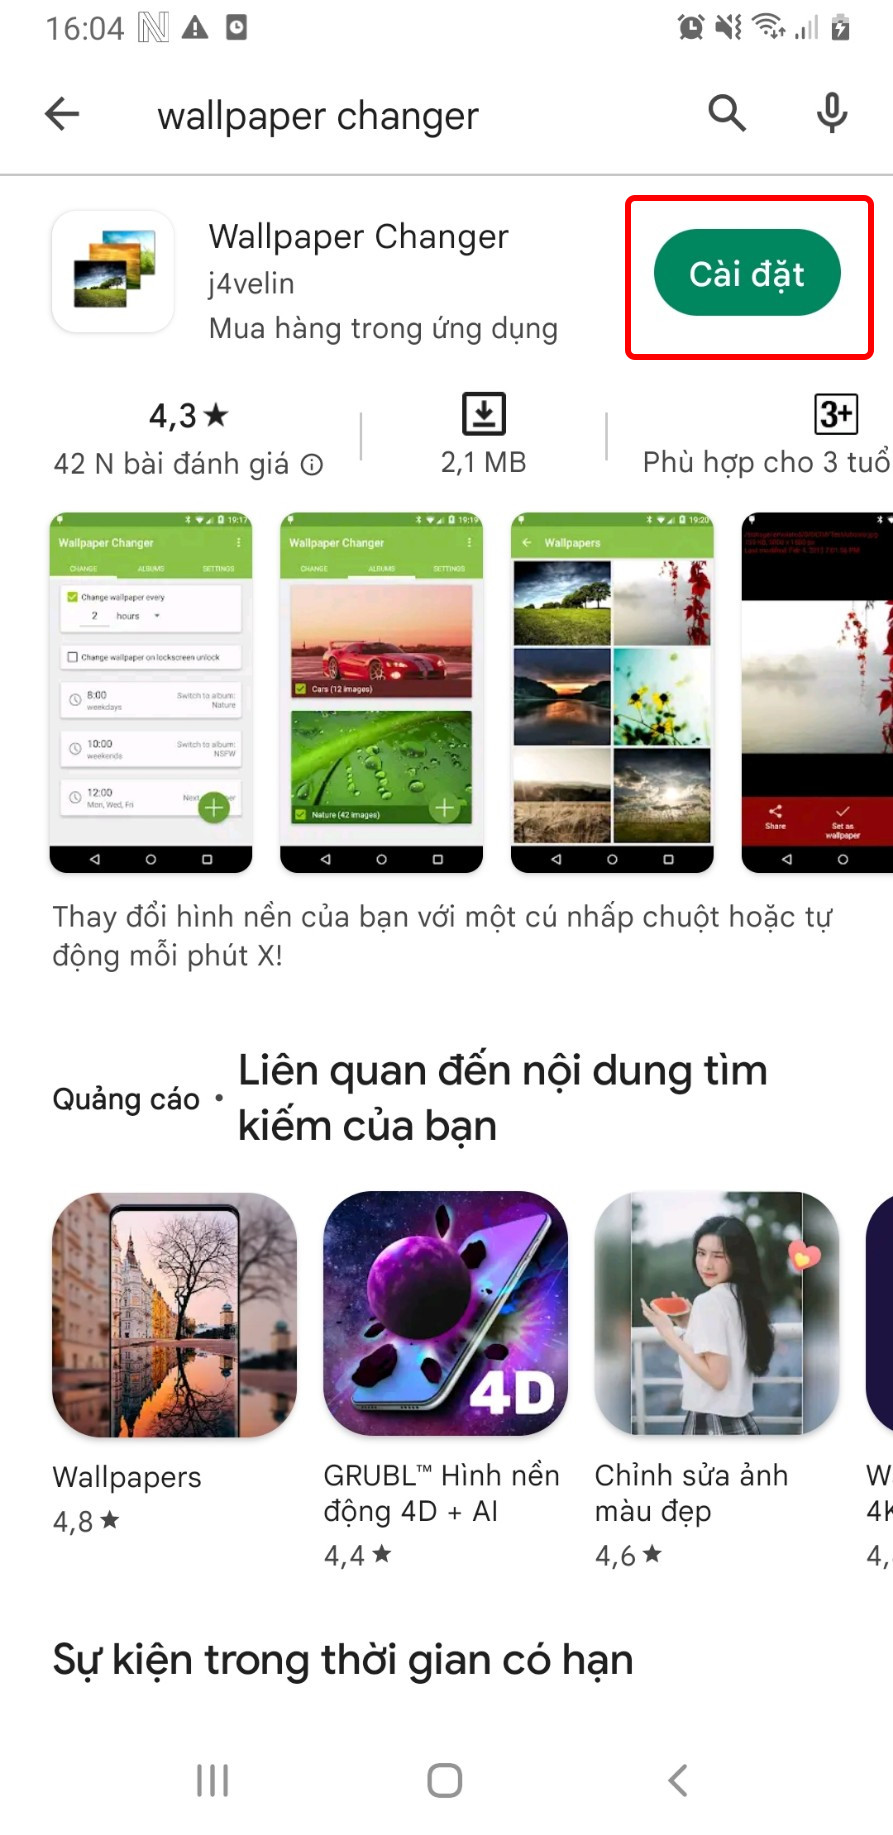 Cách cài, thay đổi hình nền, màn hình khóa cho điện thoại Samsung -  Thegioididong.com